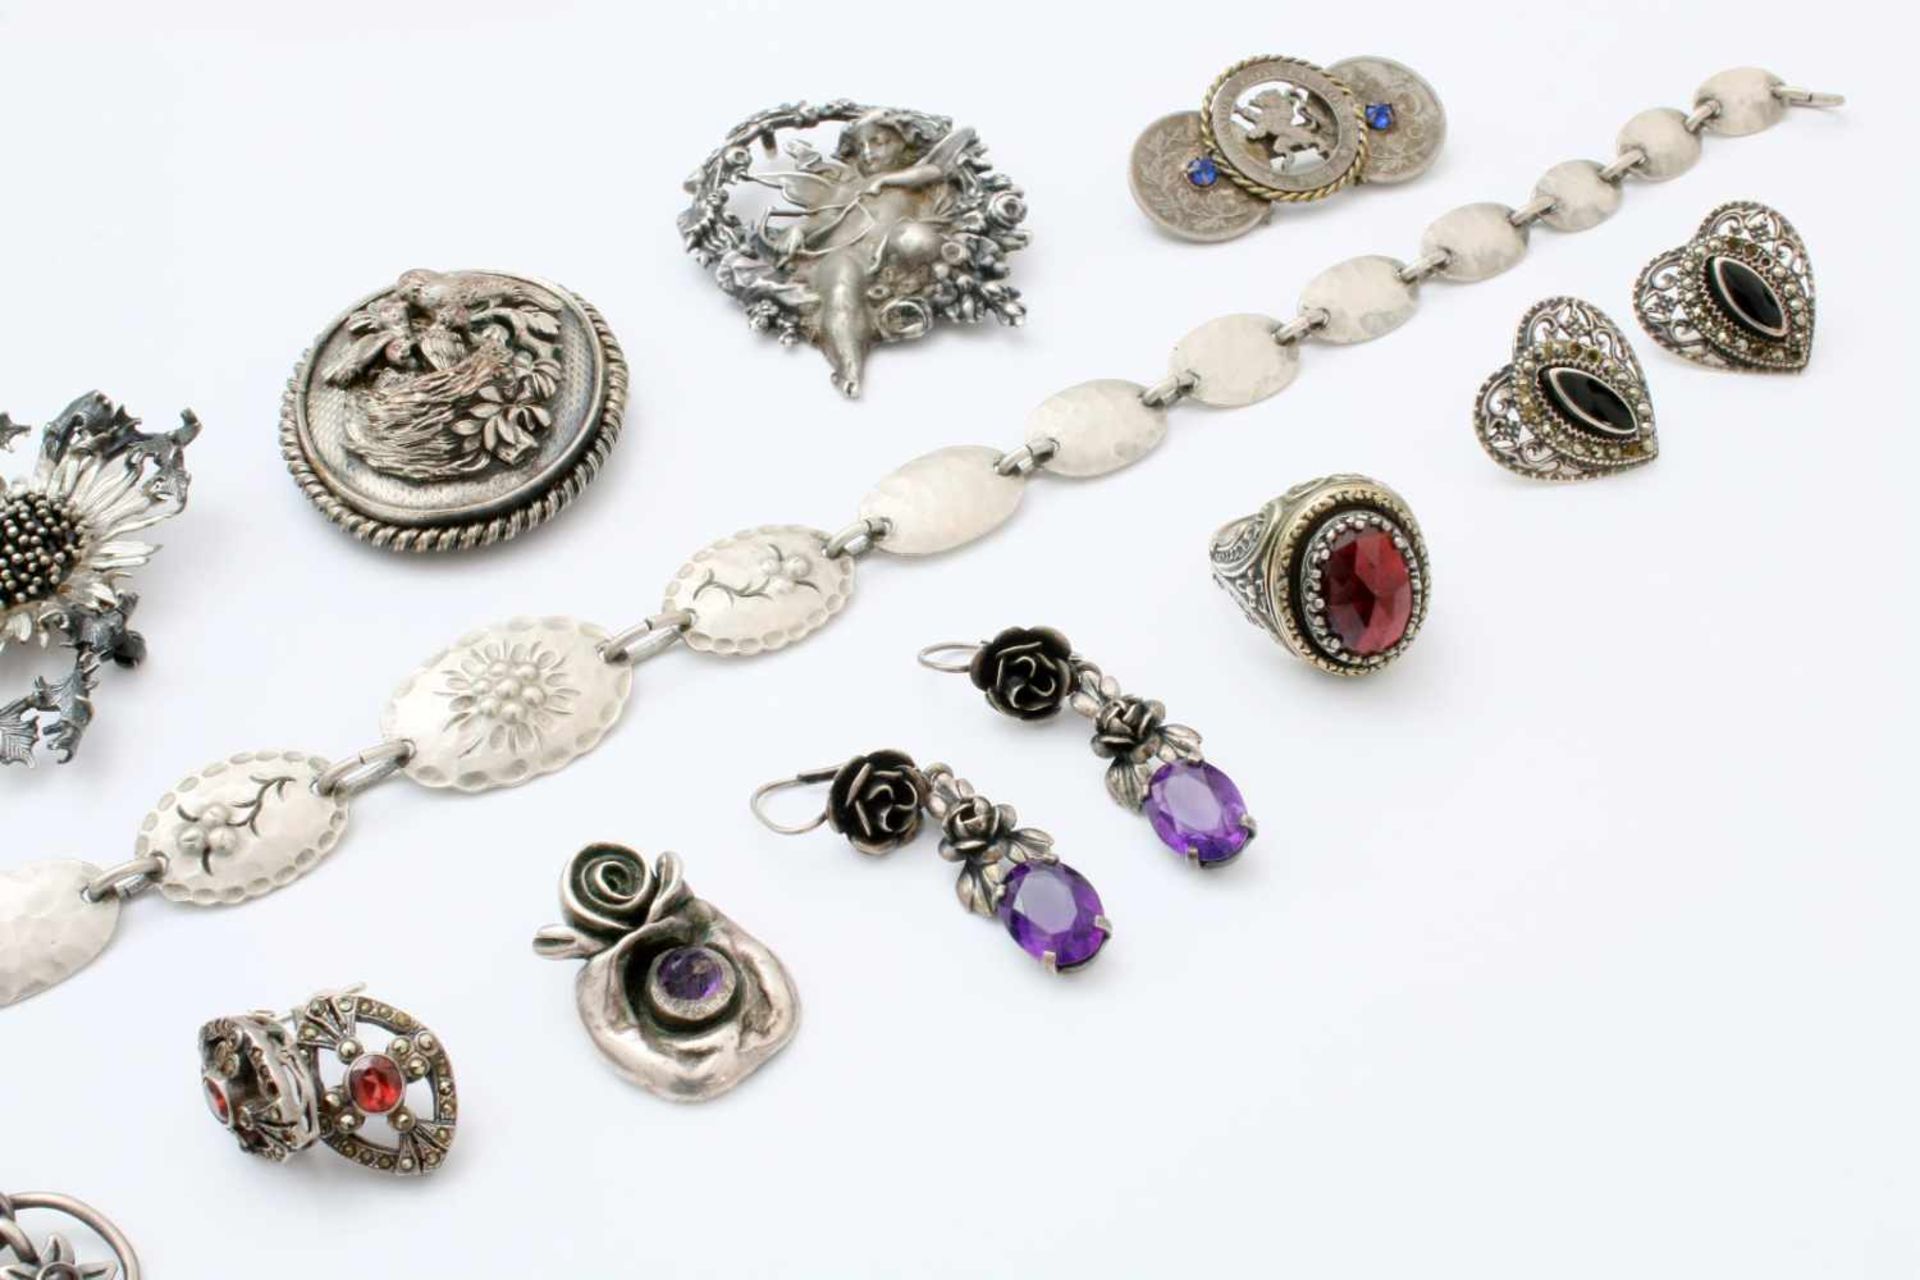 Sammlung Silberschmuck - 20 Teile 7 Broschen, 5 Paar Ohrringe, 1 Ring, 1 Armkette, 1 Anhänger, tw. - Bild 3 aus 4